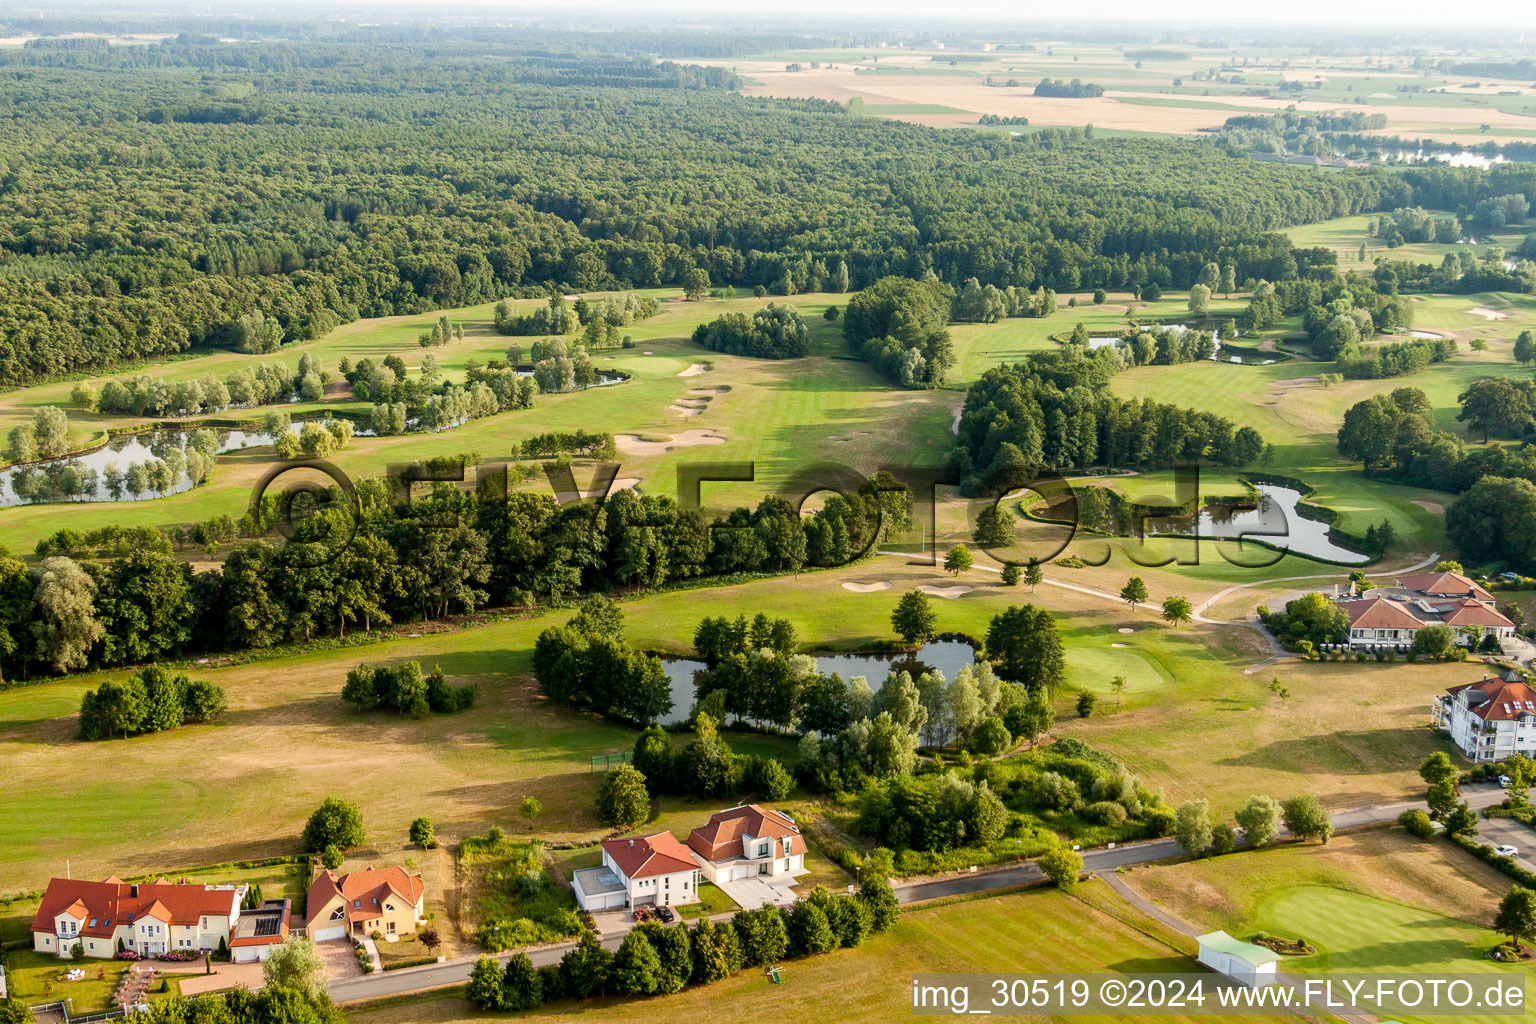 Luftaufnahme von Gelände des Golfplatz Golfclub Soufflenheim Baden-Baden in Soufflenheim in Grand Est im Bundesland Bas-Rhin, Frankreich